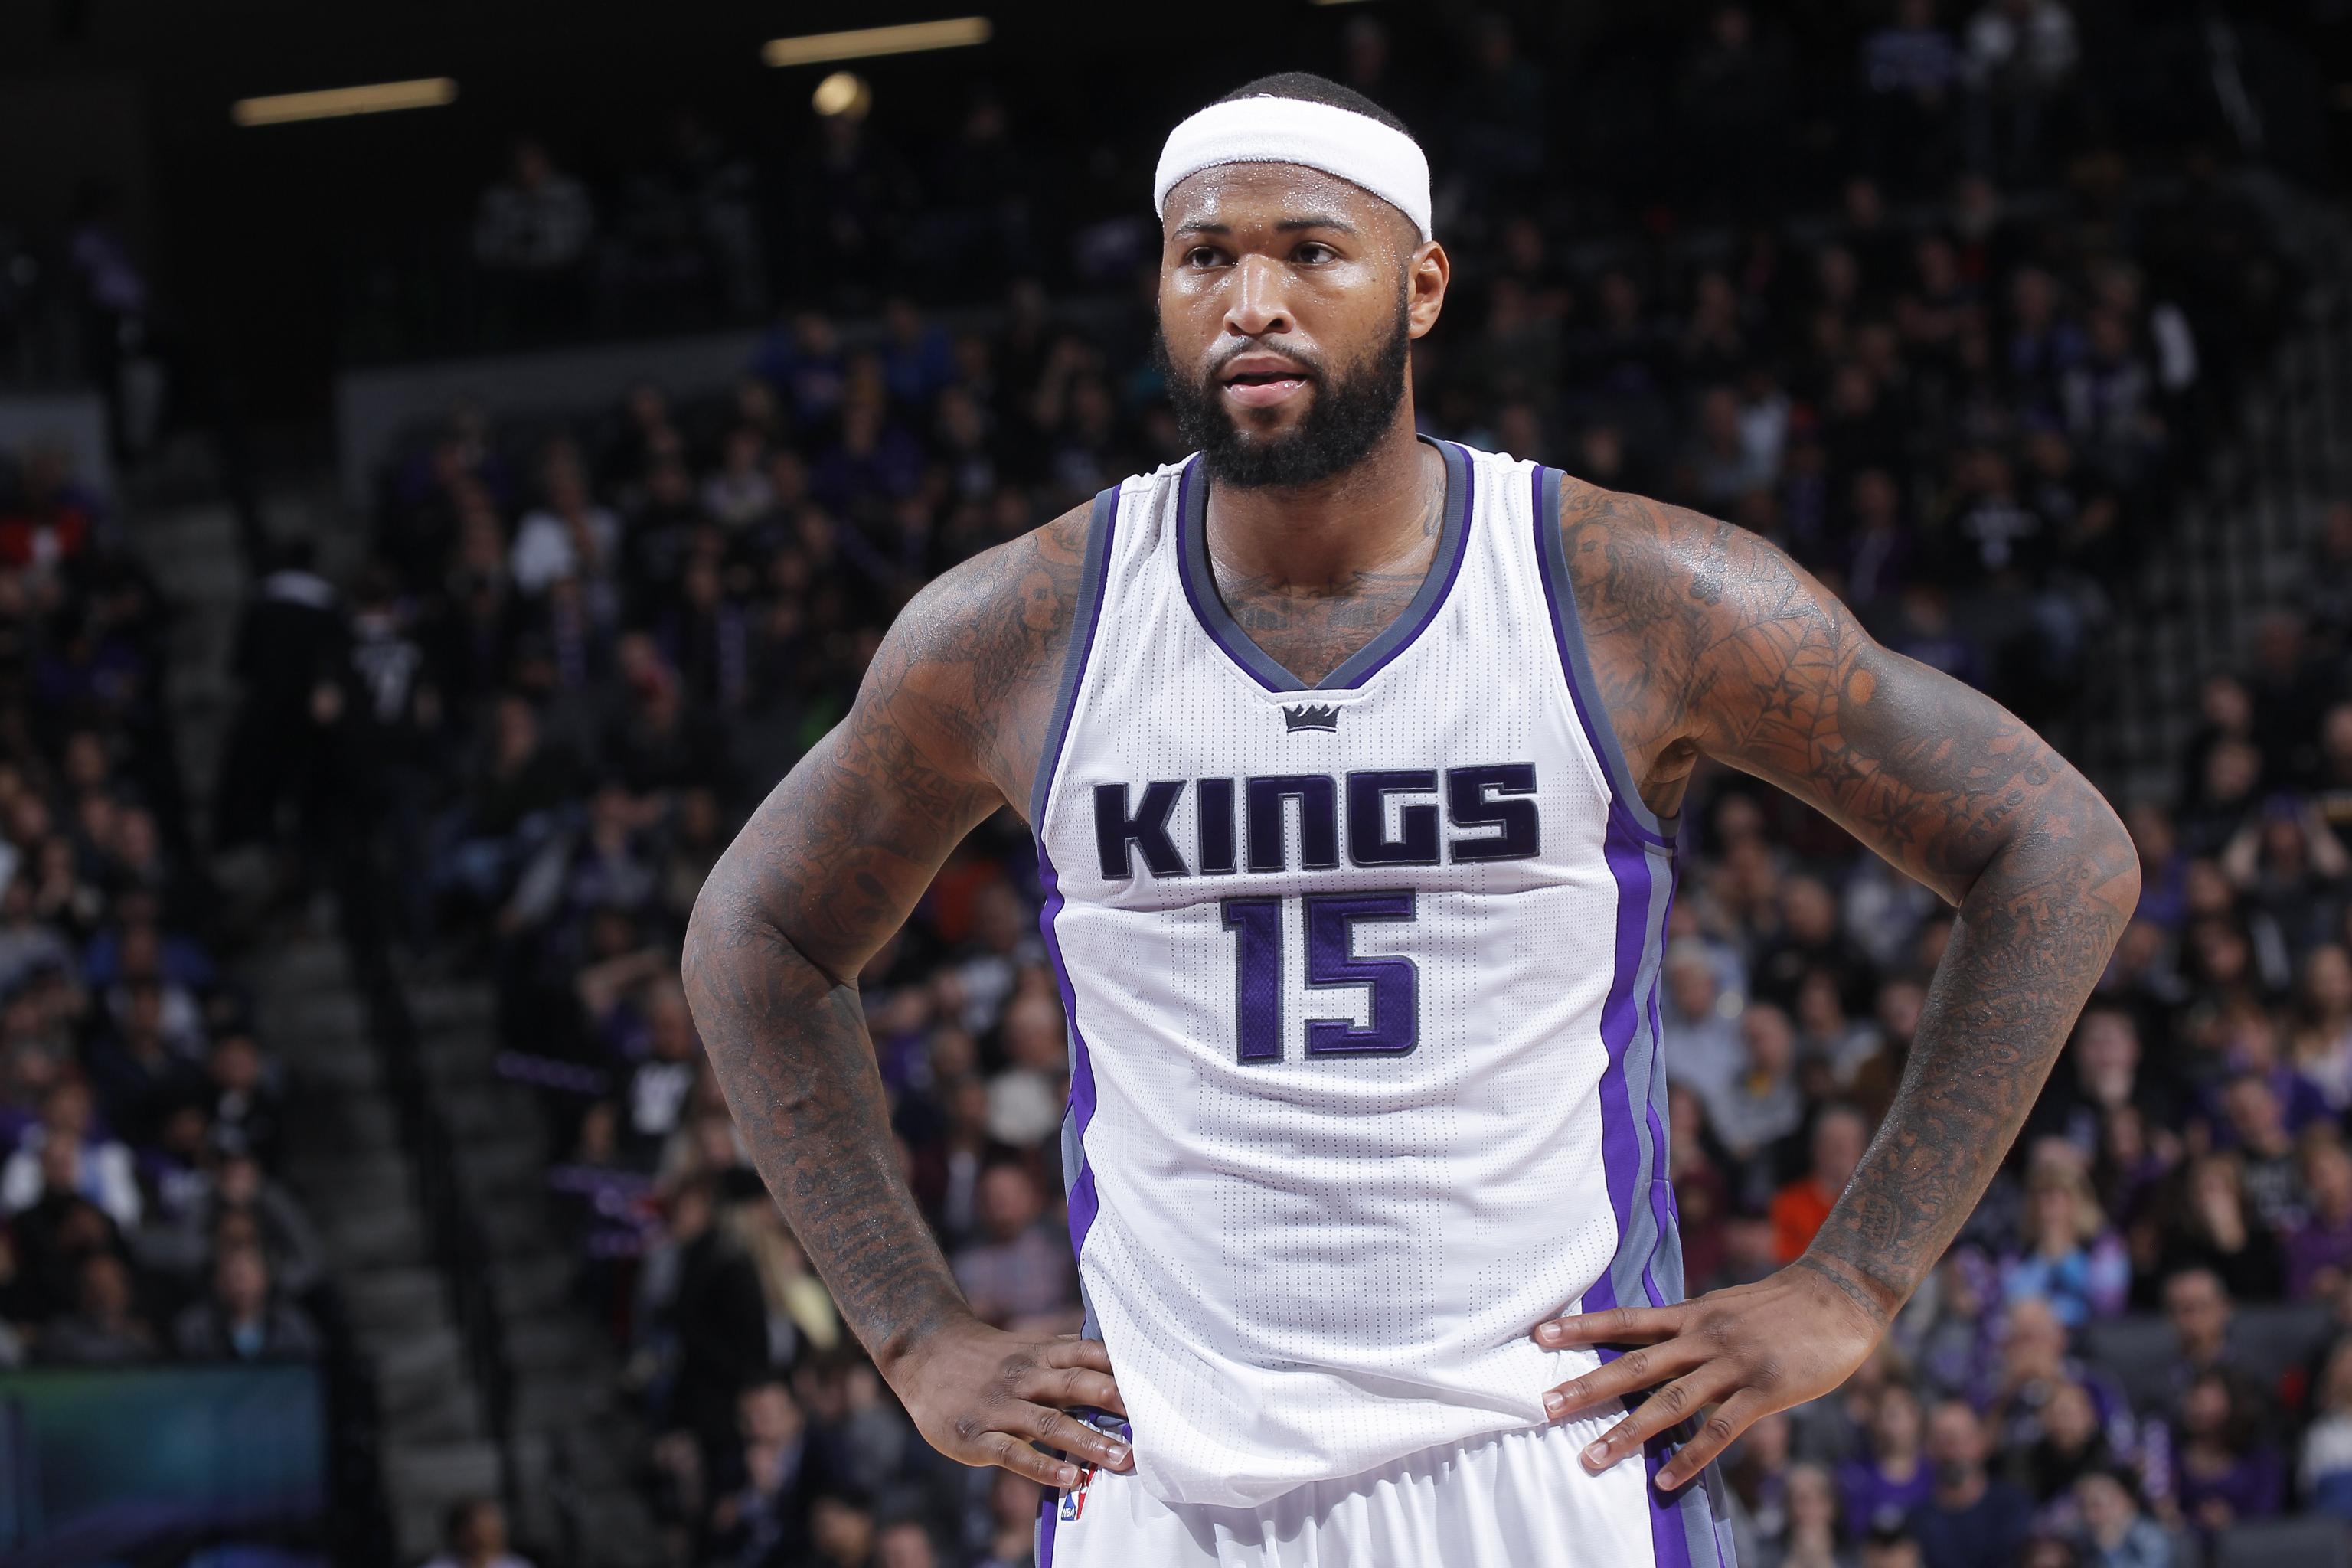 NBA Rumors: Sacramento Kings Will Shop DeMarcus Cousins This Summer